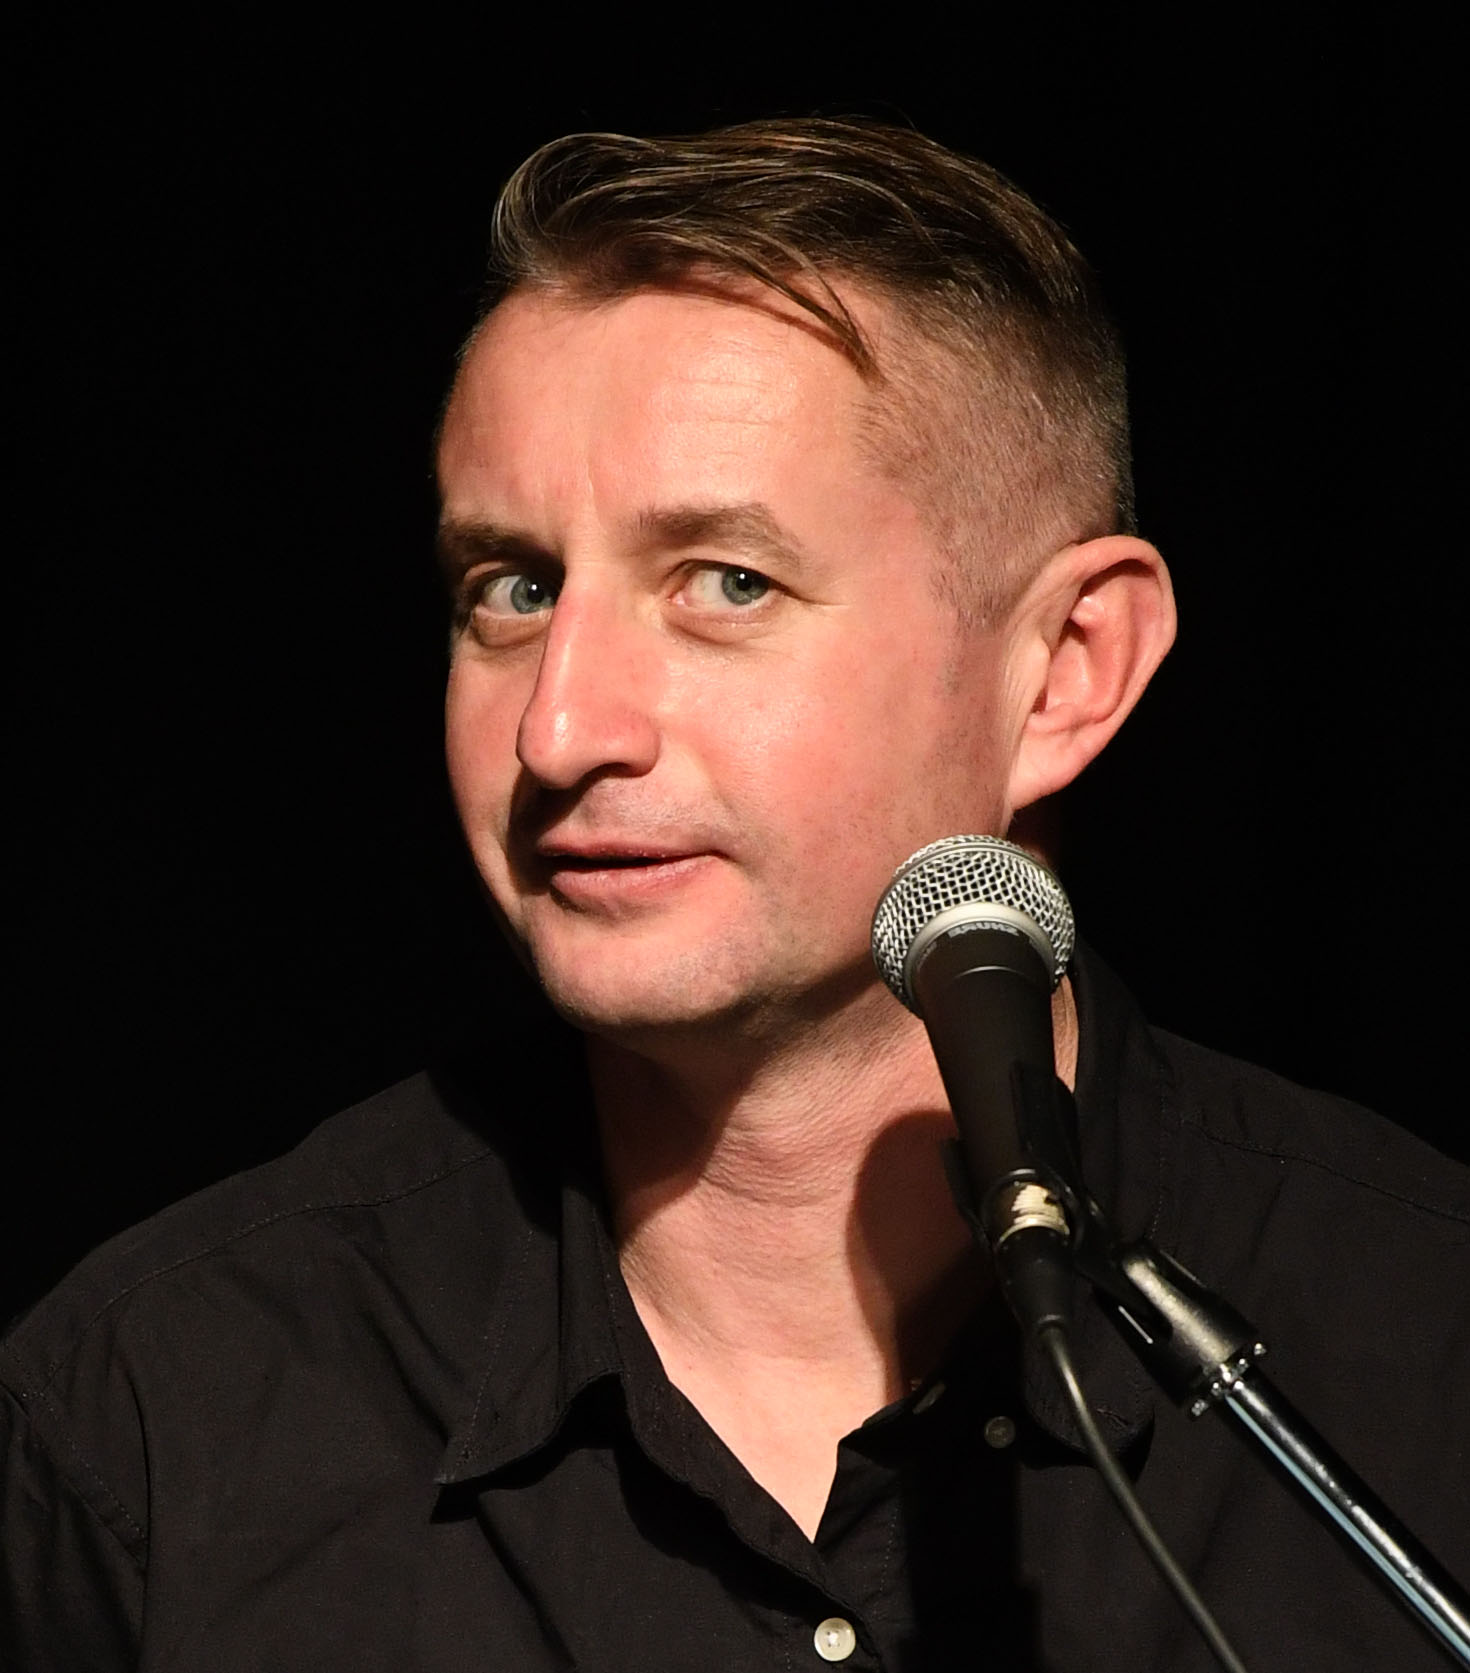 Zu sehen ist der Autor Serhiy Zhadan in schwarzem hemd vor schwarzem Hintergrund, er guckt vor einem Mikrofon stehend verschmitzt in die Kamera.